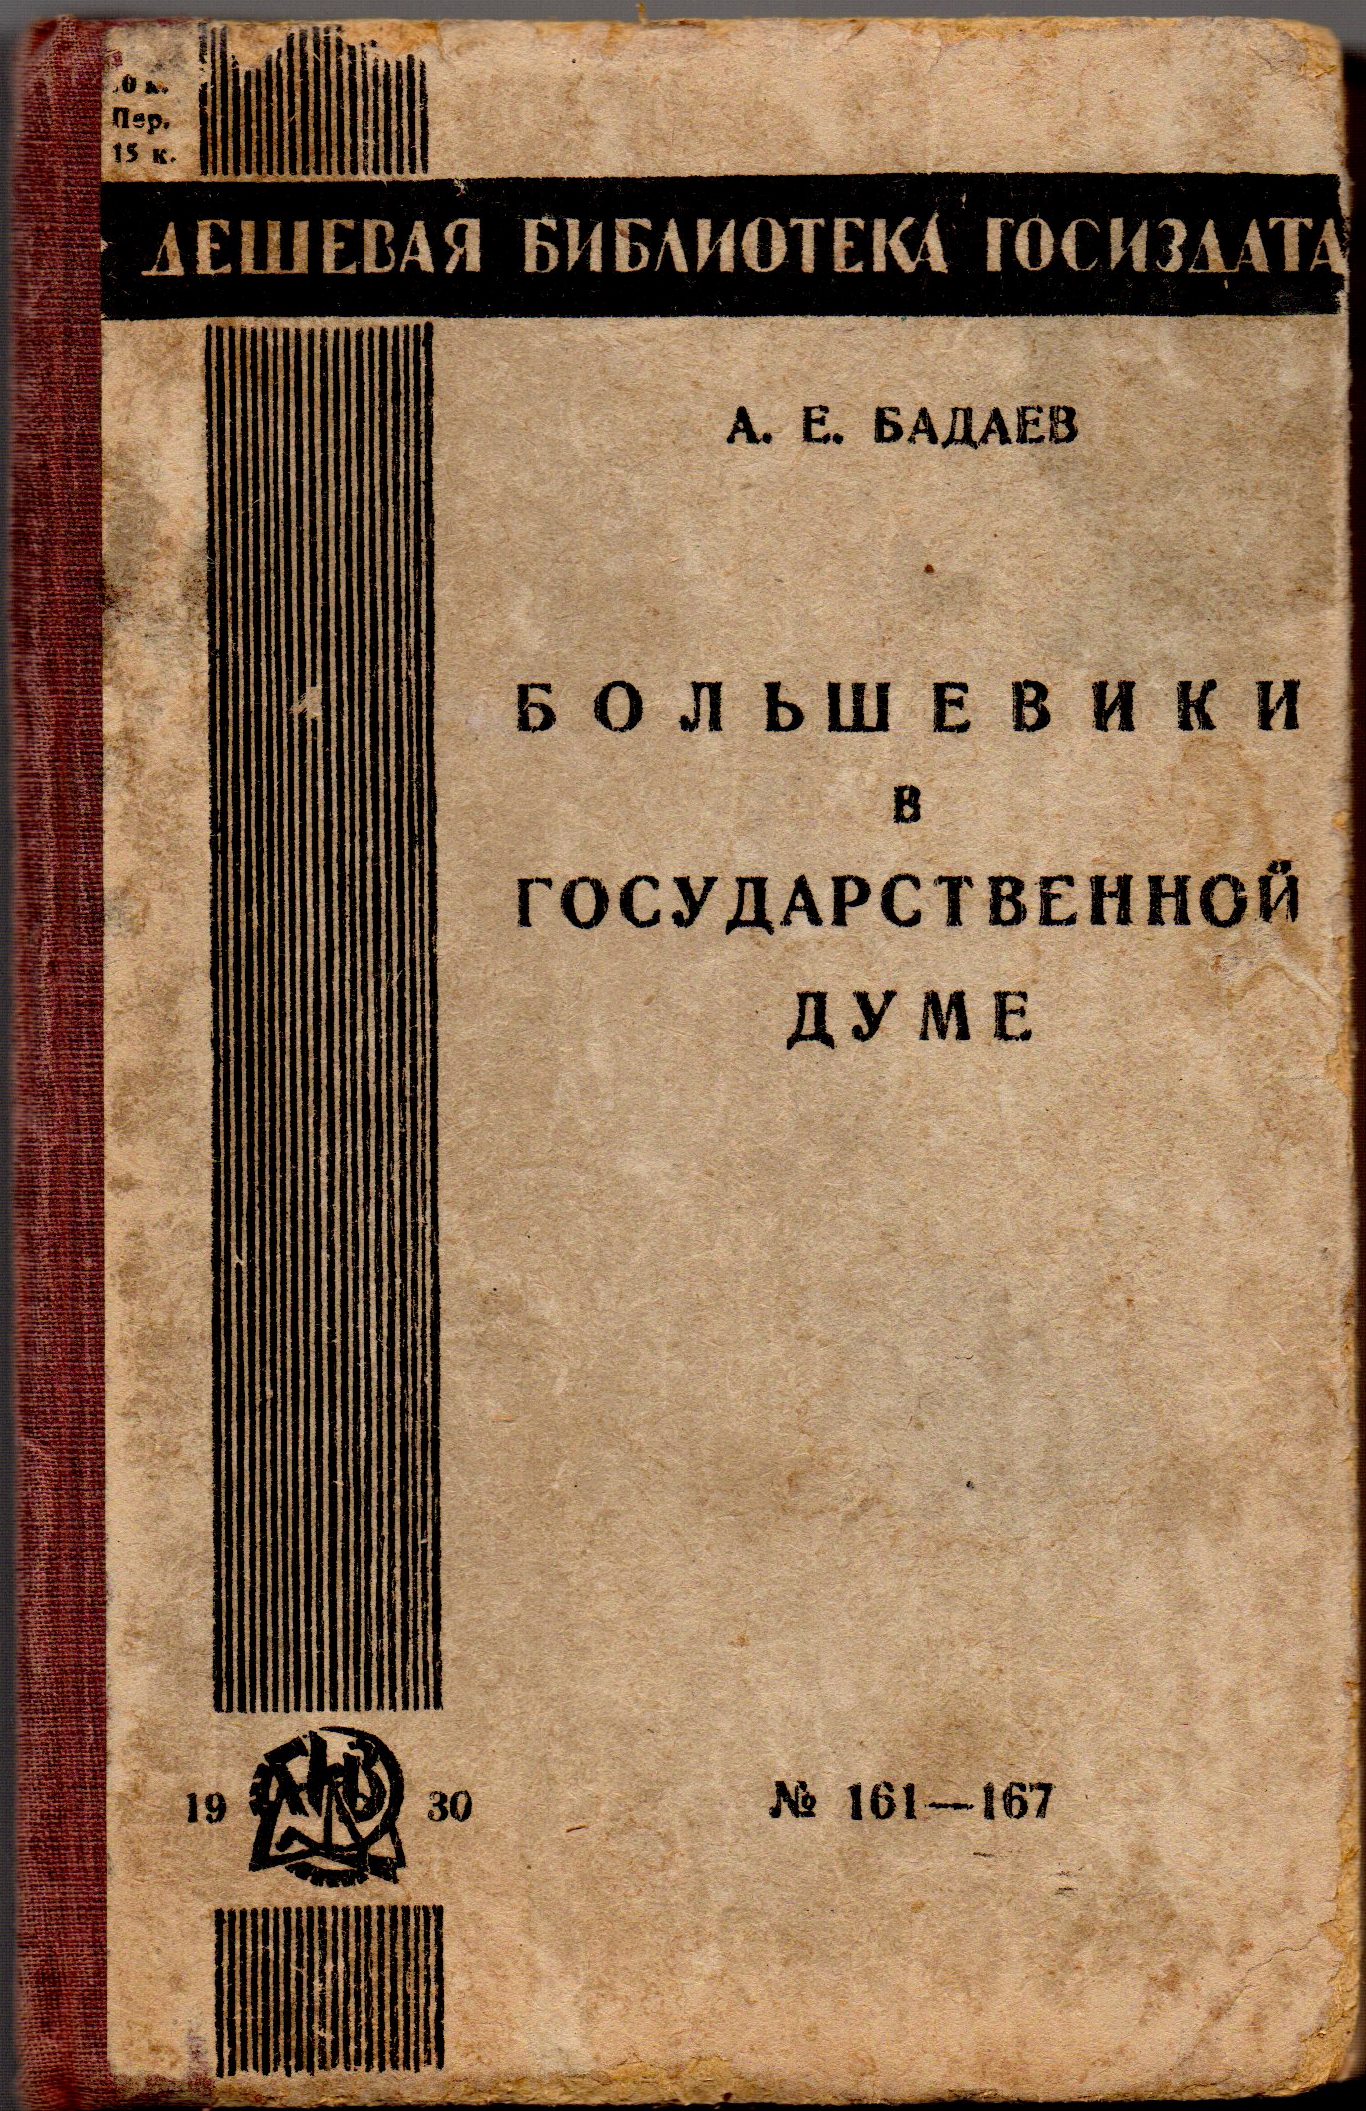 Книга "Бадаев А. Е. "Большевики в Государственной думе"